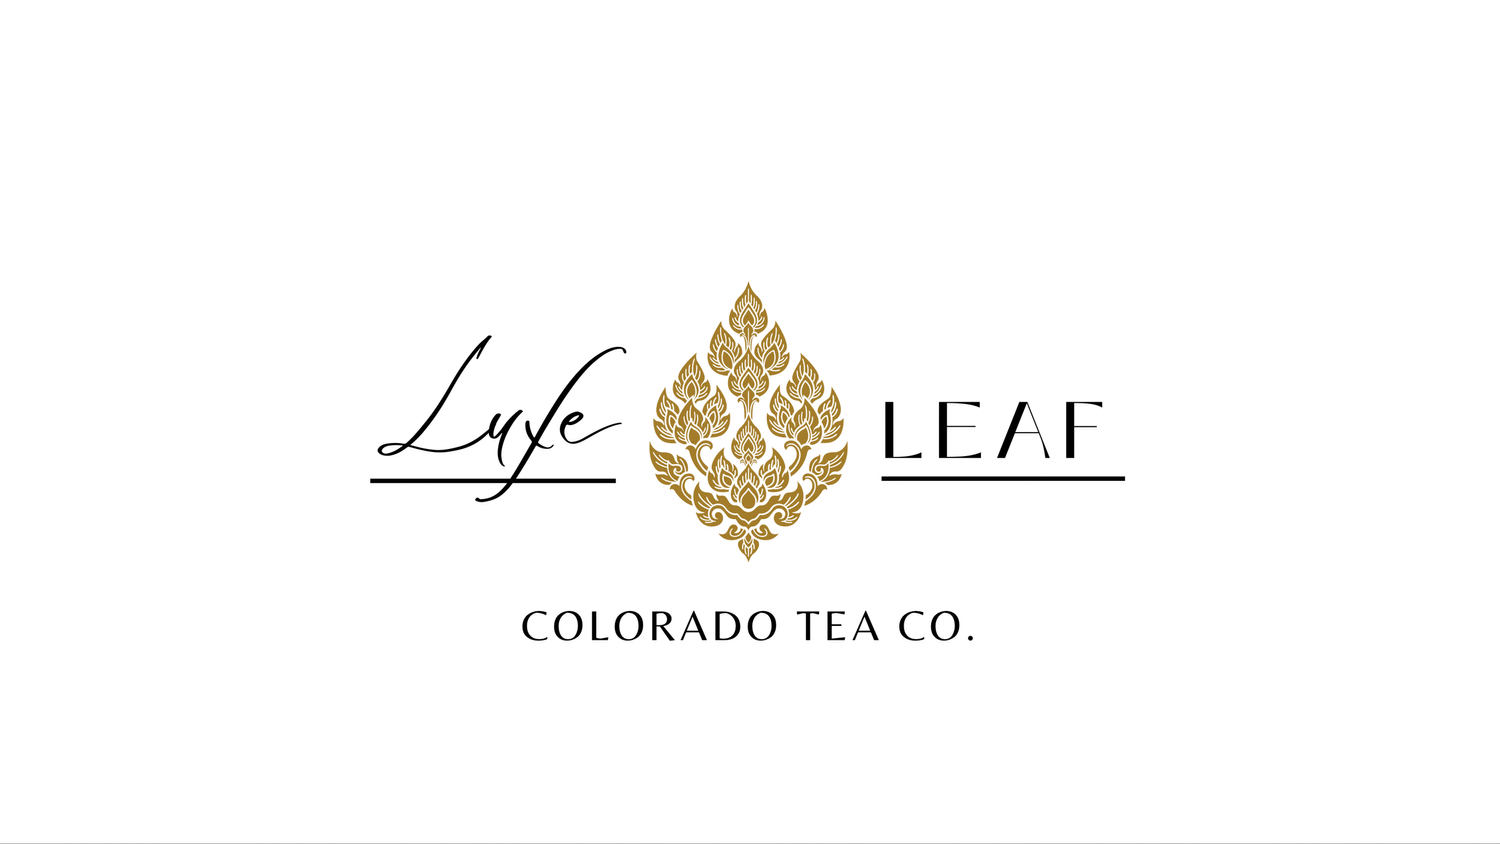 Luxe Leaf Tea Co.